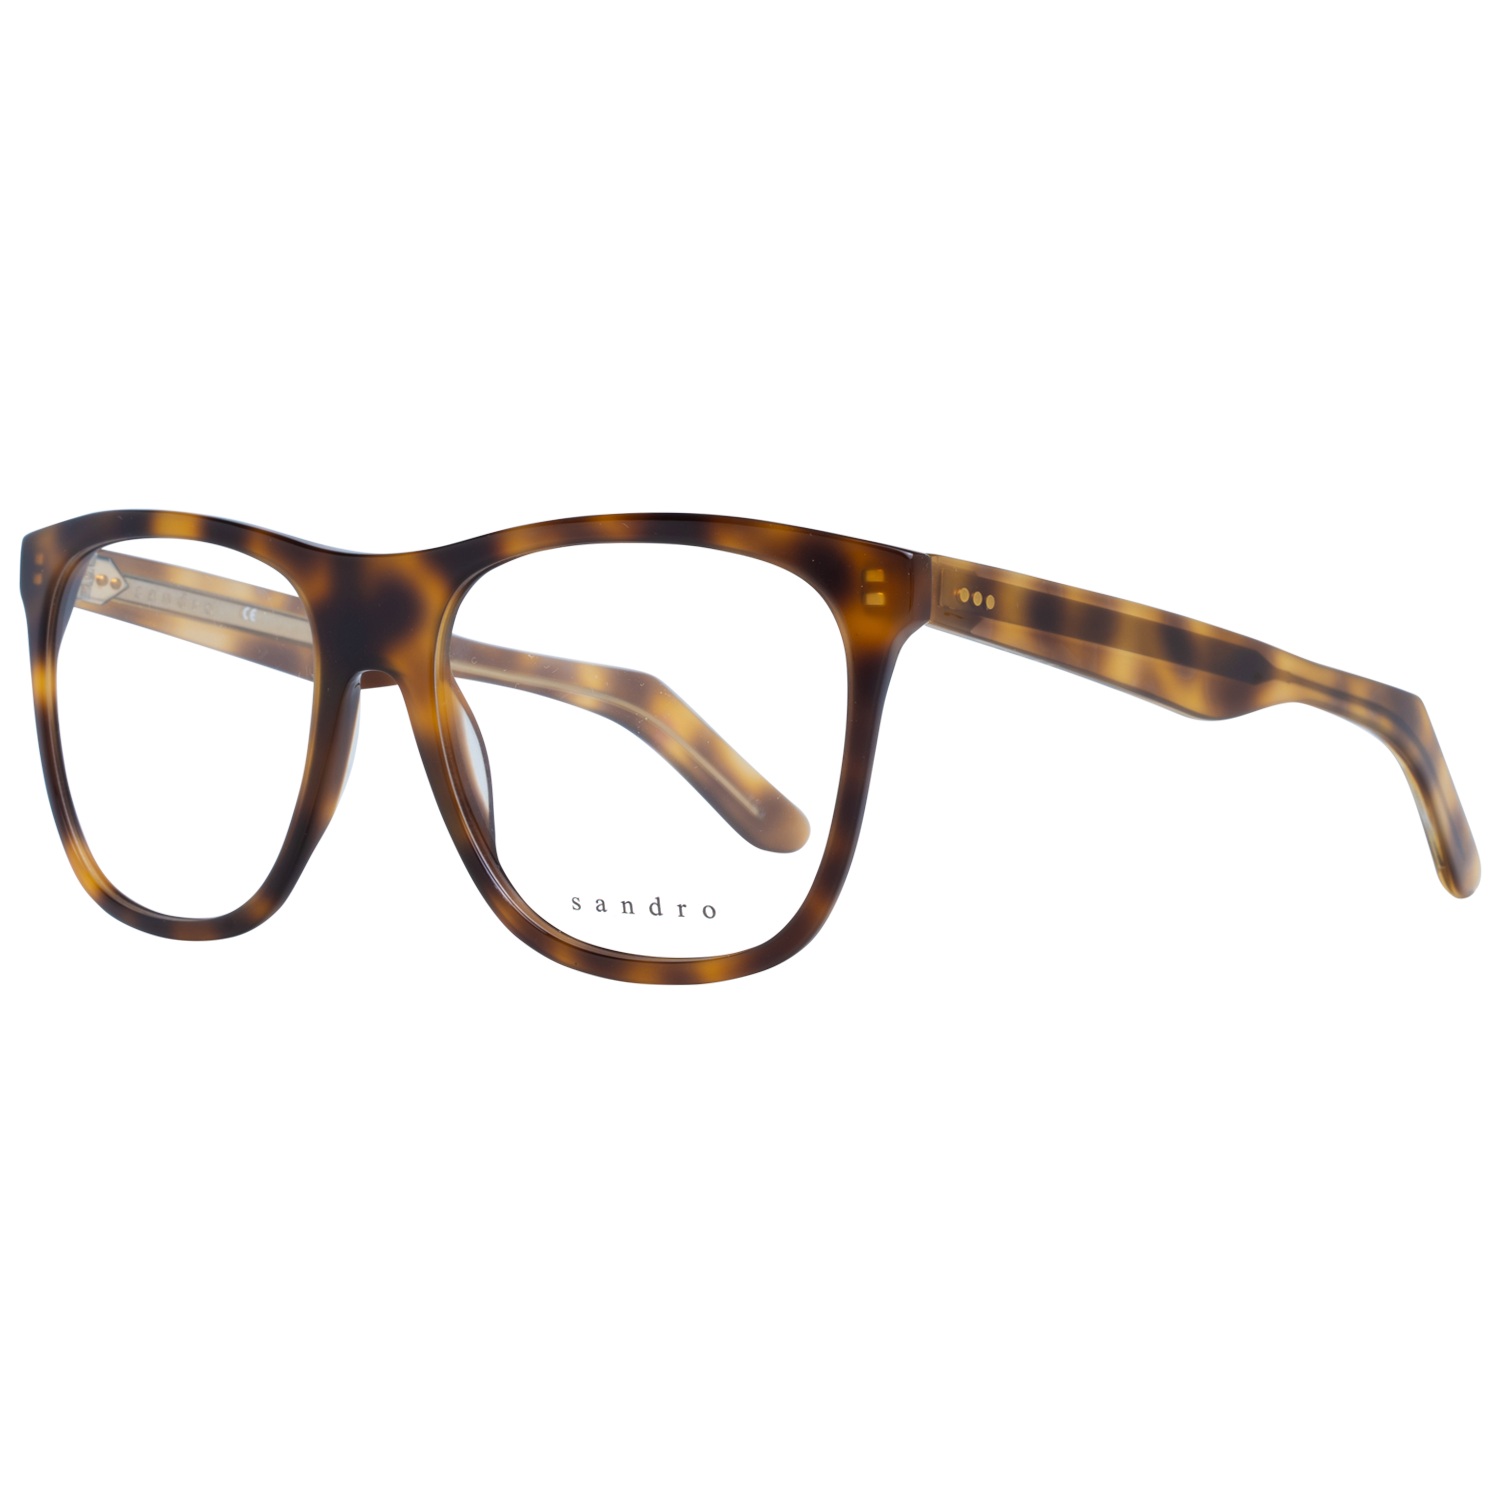 Sandro Frames Sandro Optical Frame SD1004 201 53 Eyeglasses Eyewear UK USA Australia 